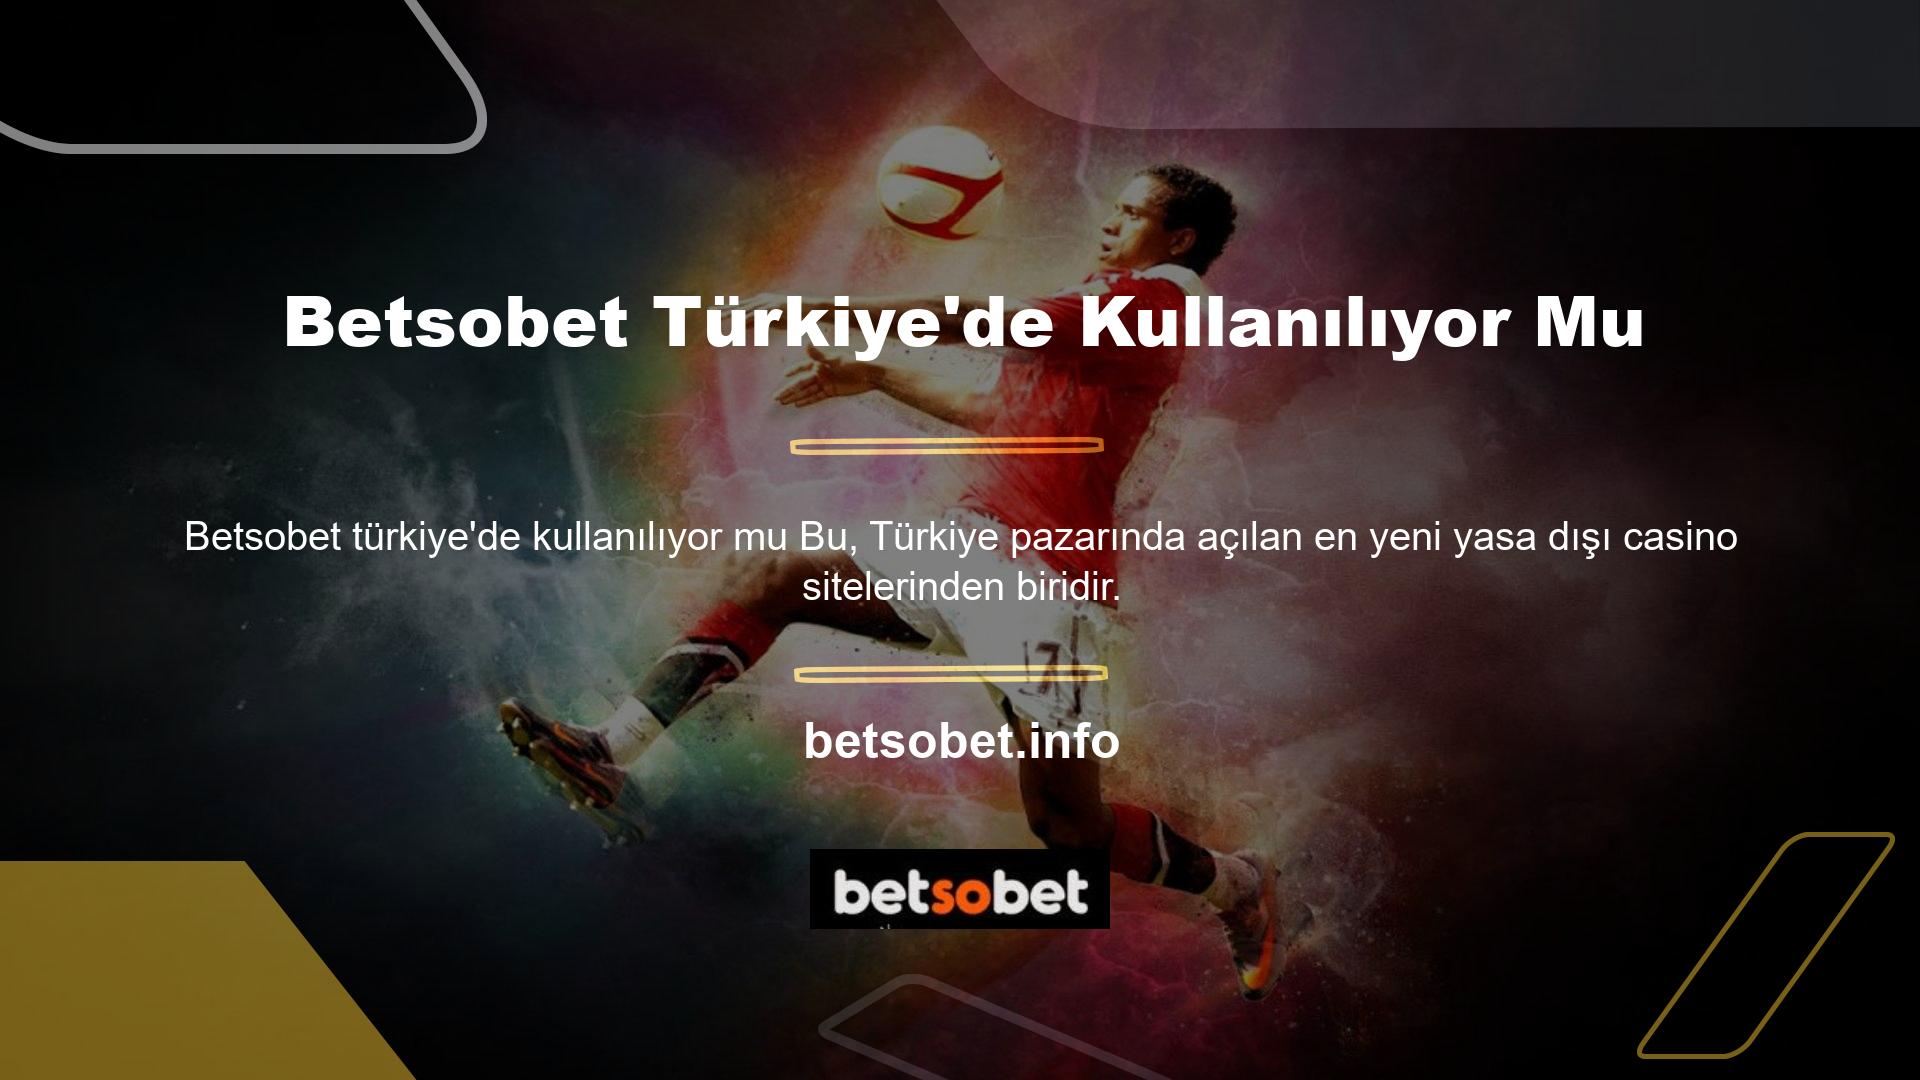 Betsobet Türkiye'de kullanılıyor mu? 18 yaşından büyükseniz bu siteyi, bu yabancı bahis sitesini kullanabilirsiniz